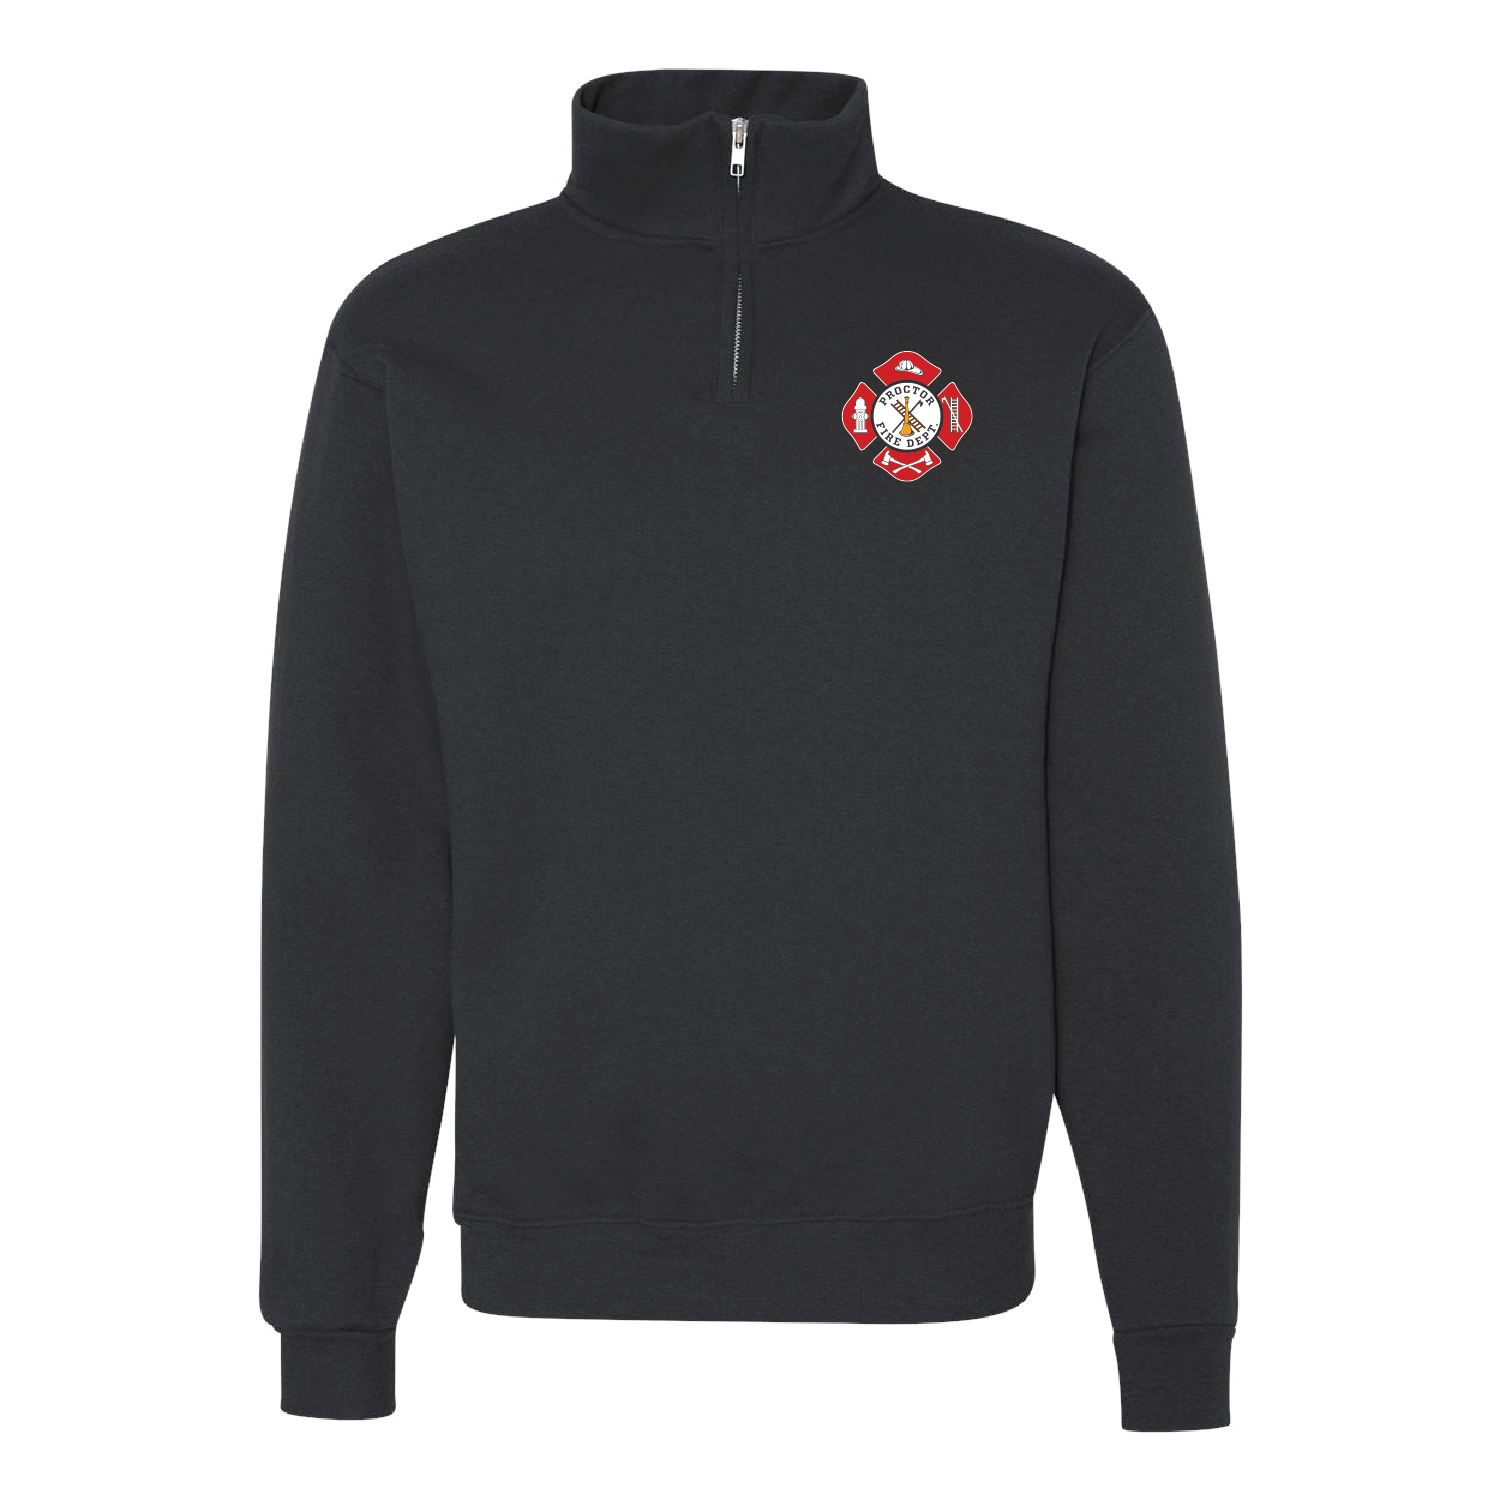 Proctor Fire Department Unisex 1/4 Zip Sweatshirt - DSP On Demand